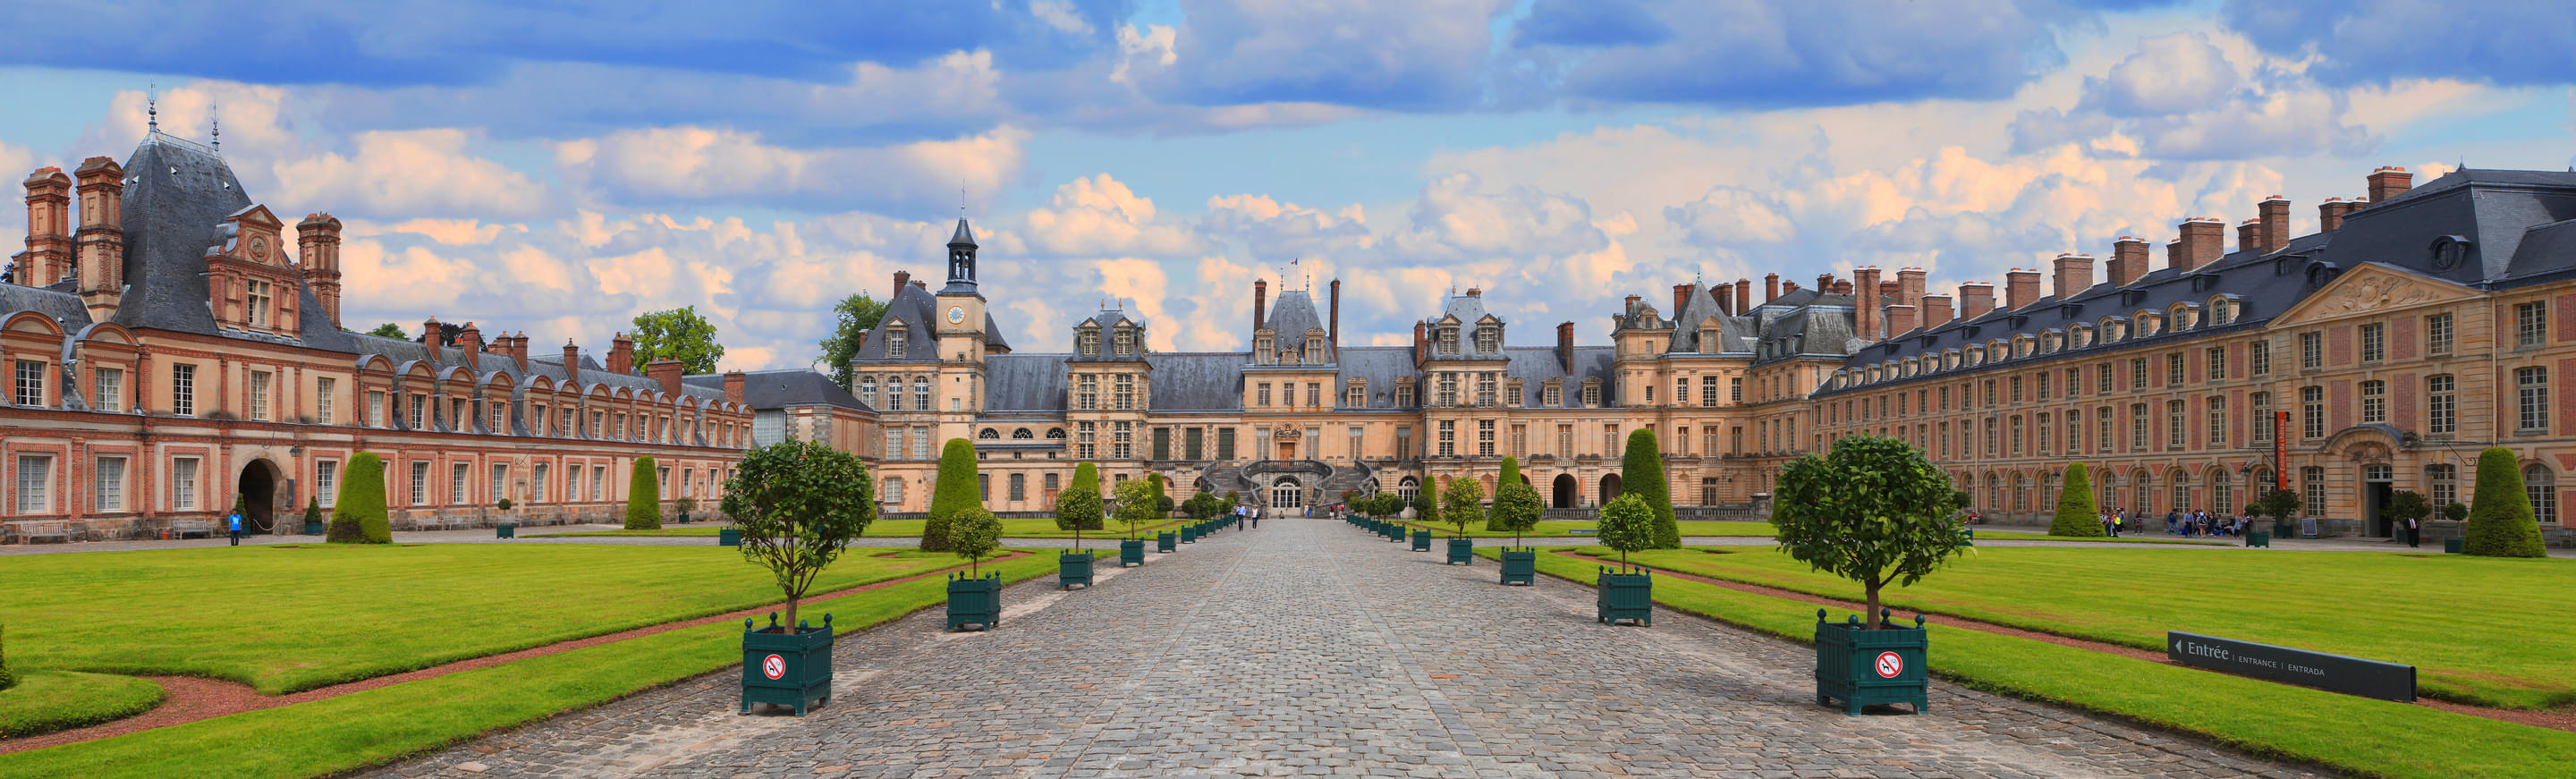 Chateau de Fontainebleau Paris Overview